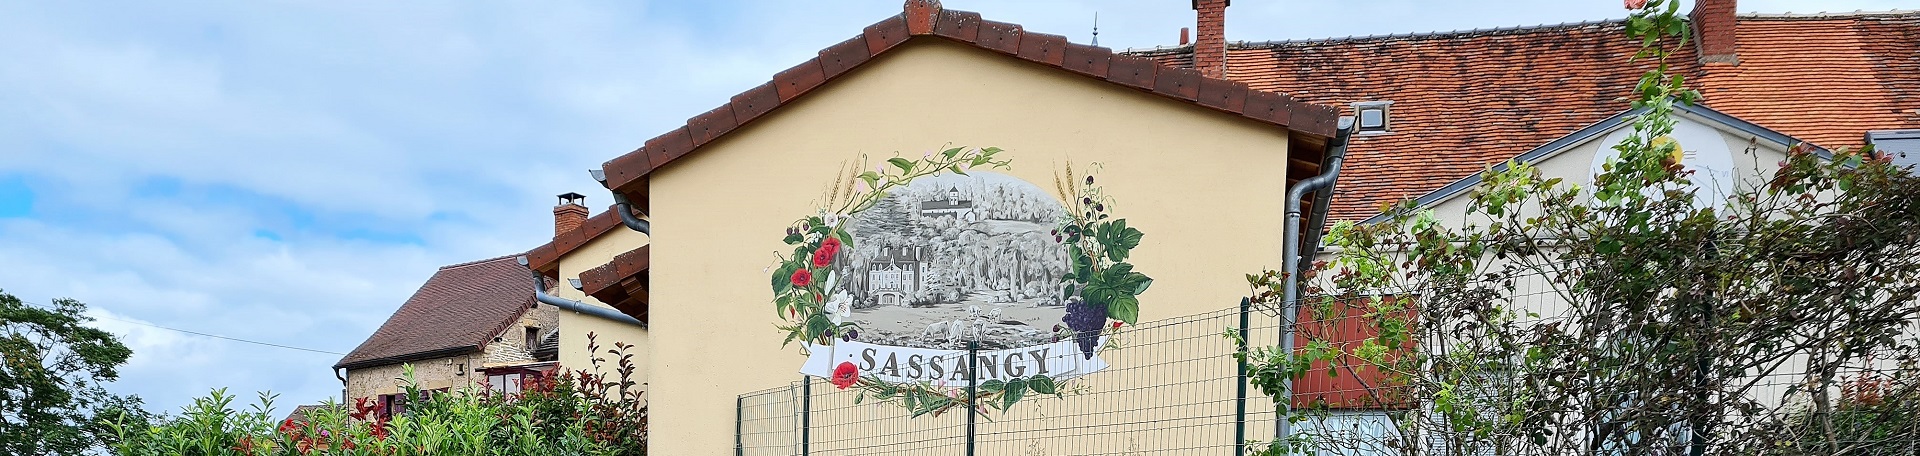 Banniere Commune de Sassangy